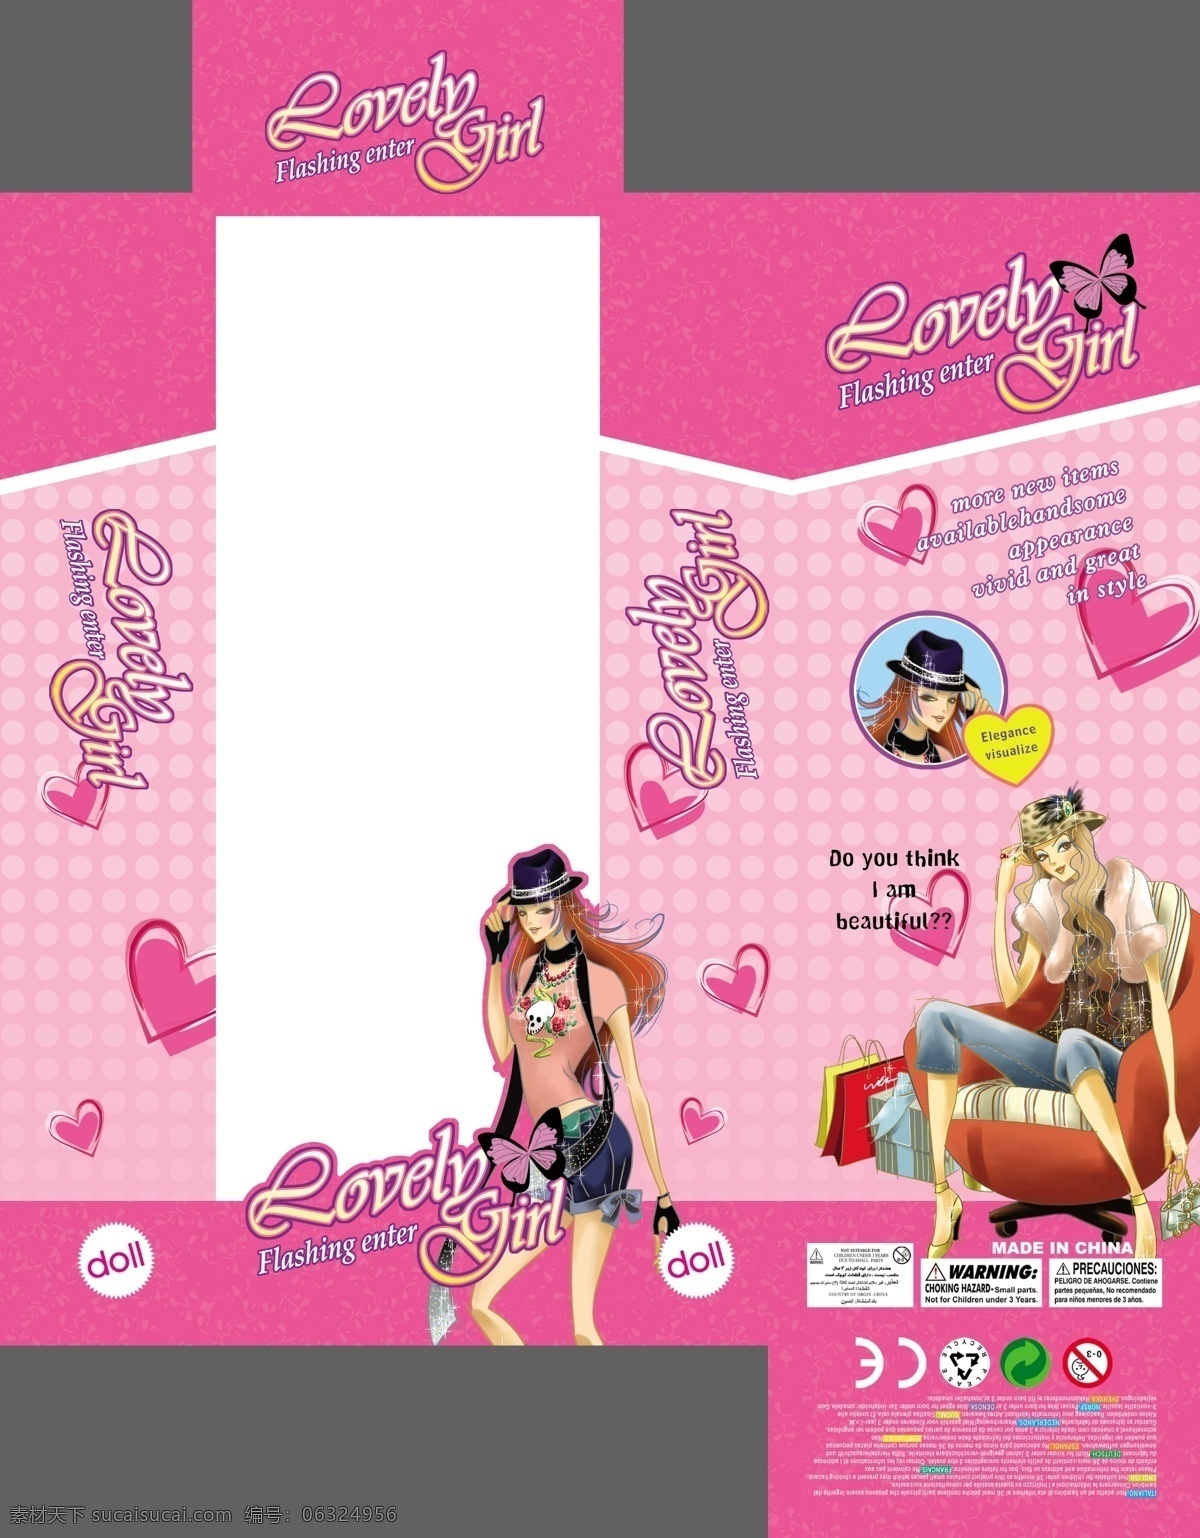 芭比包装盒 芭比 时尚芭比 购物女性 爱心 芭比玩具 玩具包装 美女 英文 蝴蝶 包装设计 广告设计模板 源文件